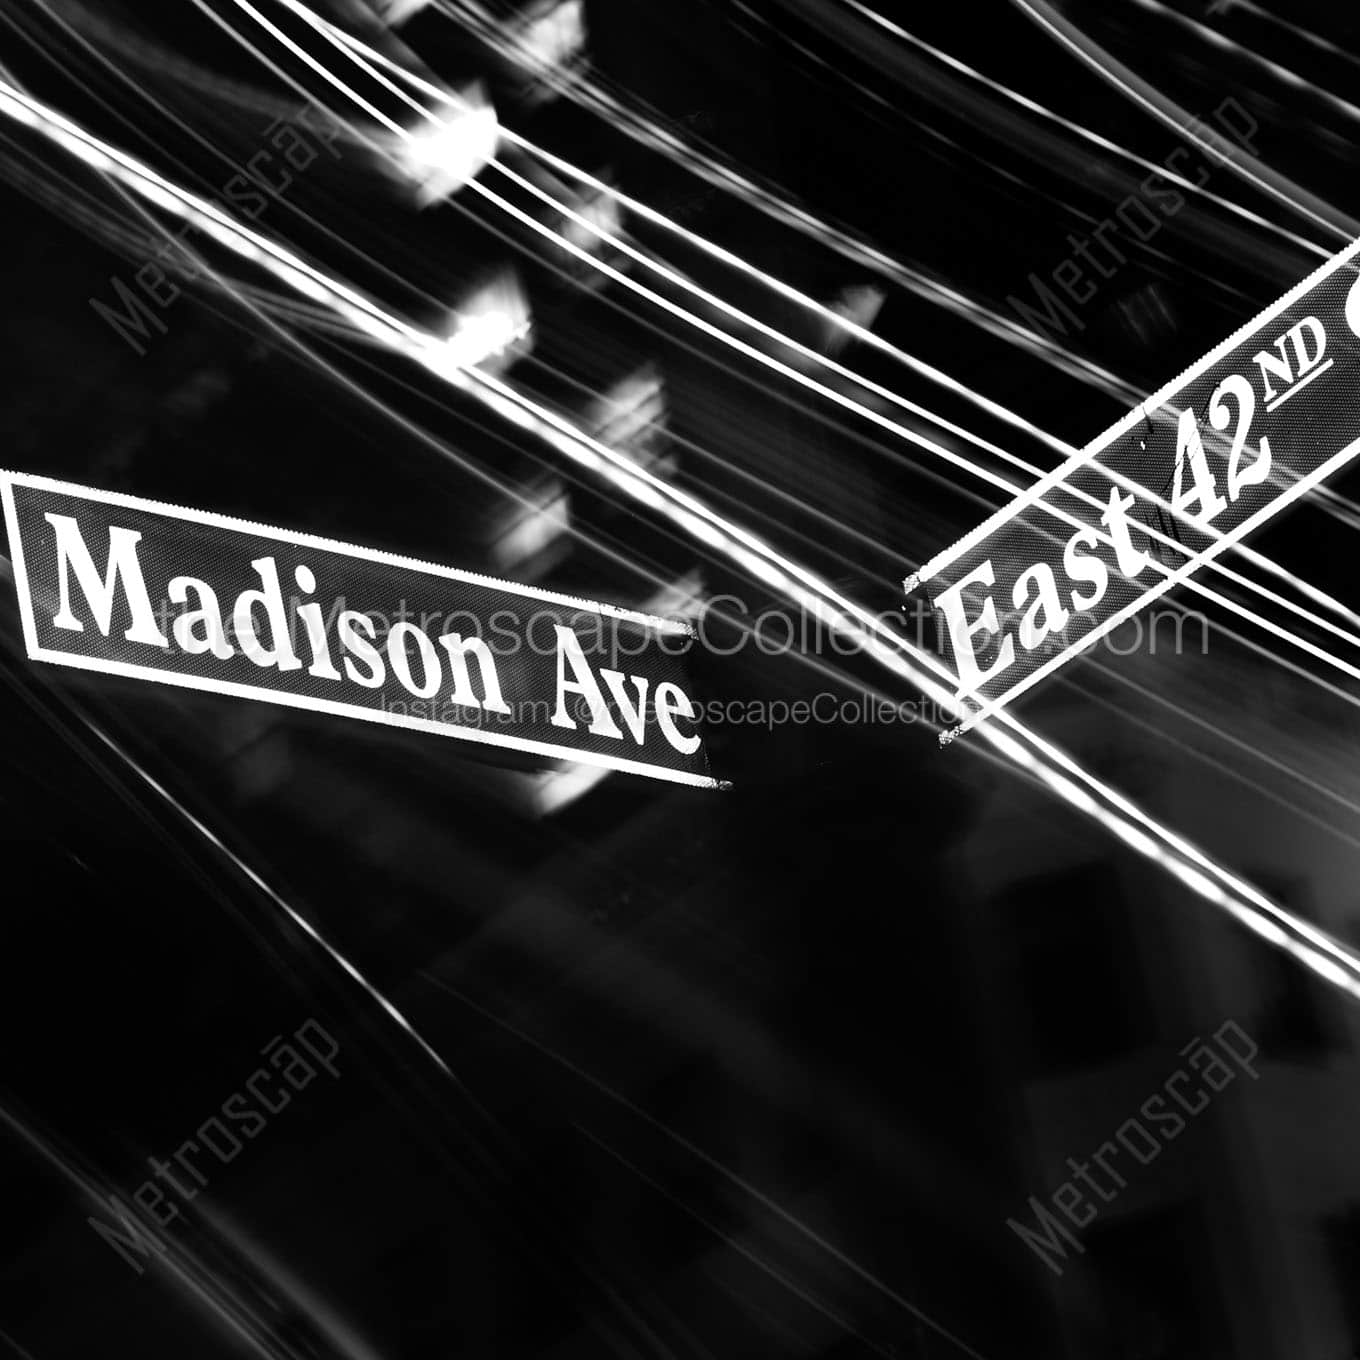 madison ave street sign Black & White Office Art